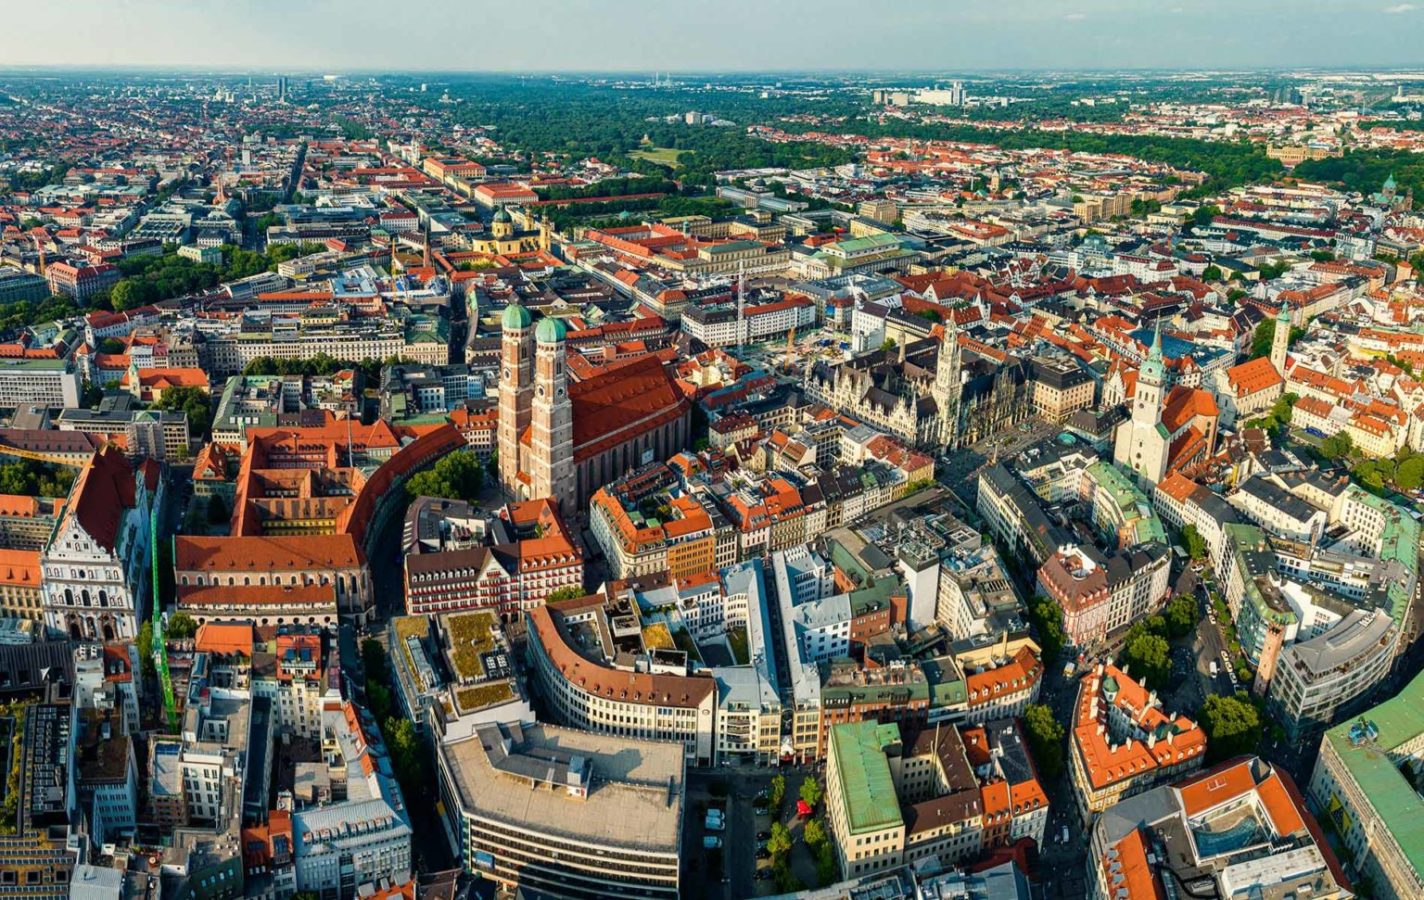 München von oben. Hintergrundbild zum Beitrag Stadtentwicklung München.